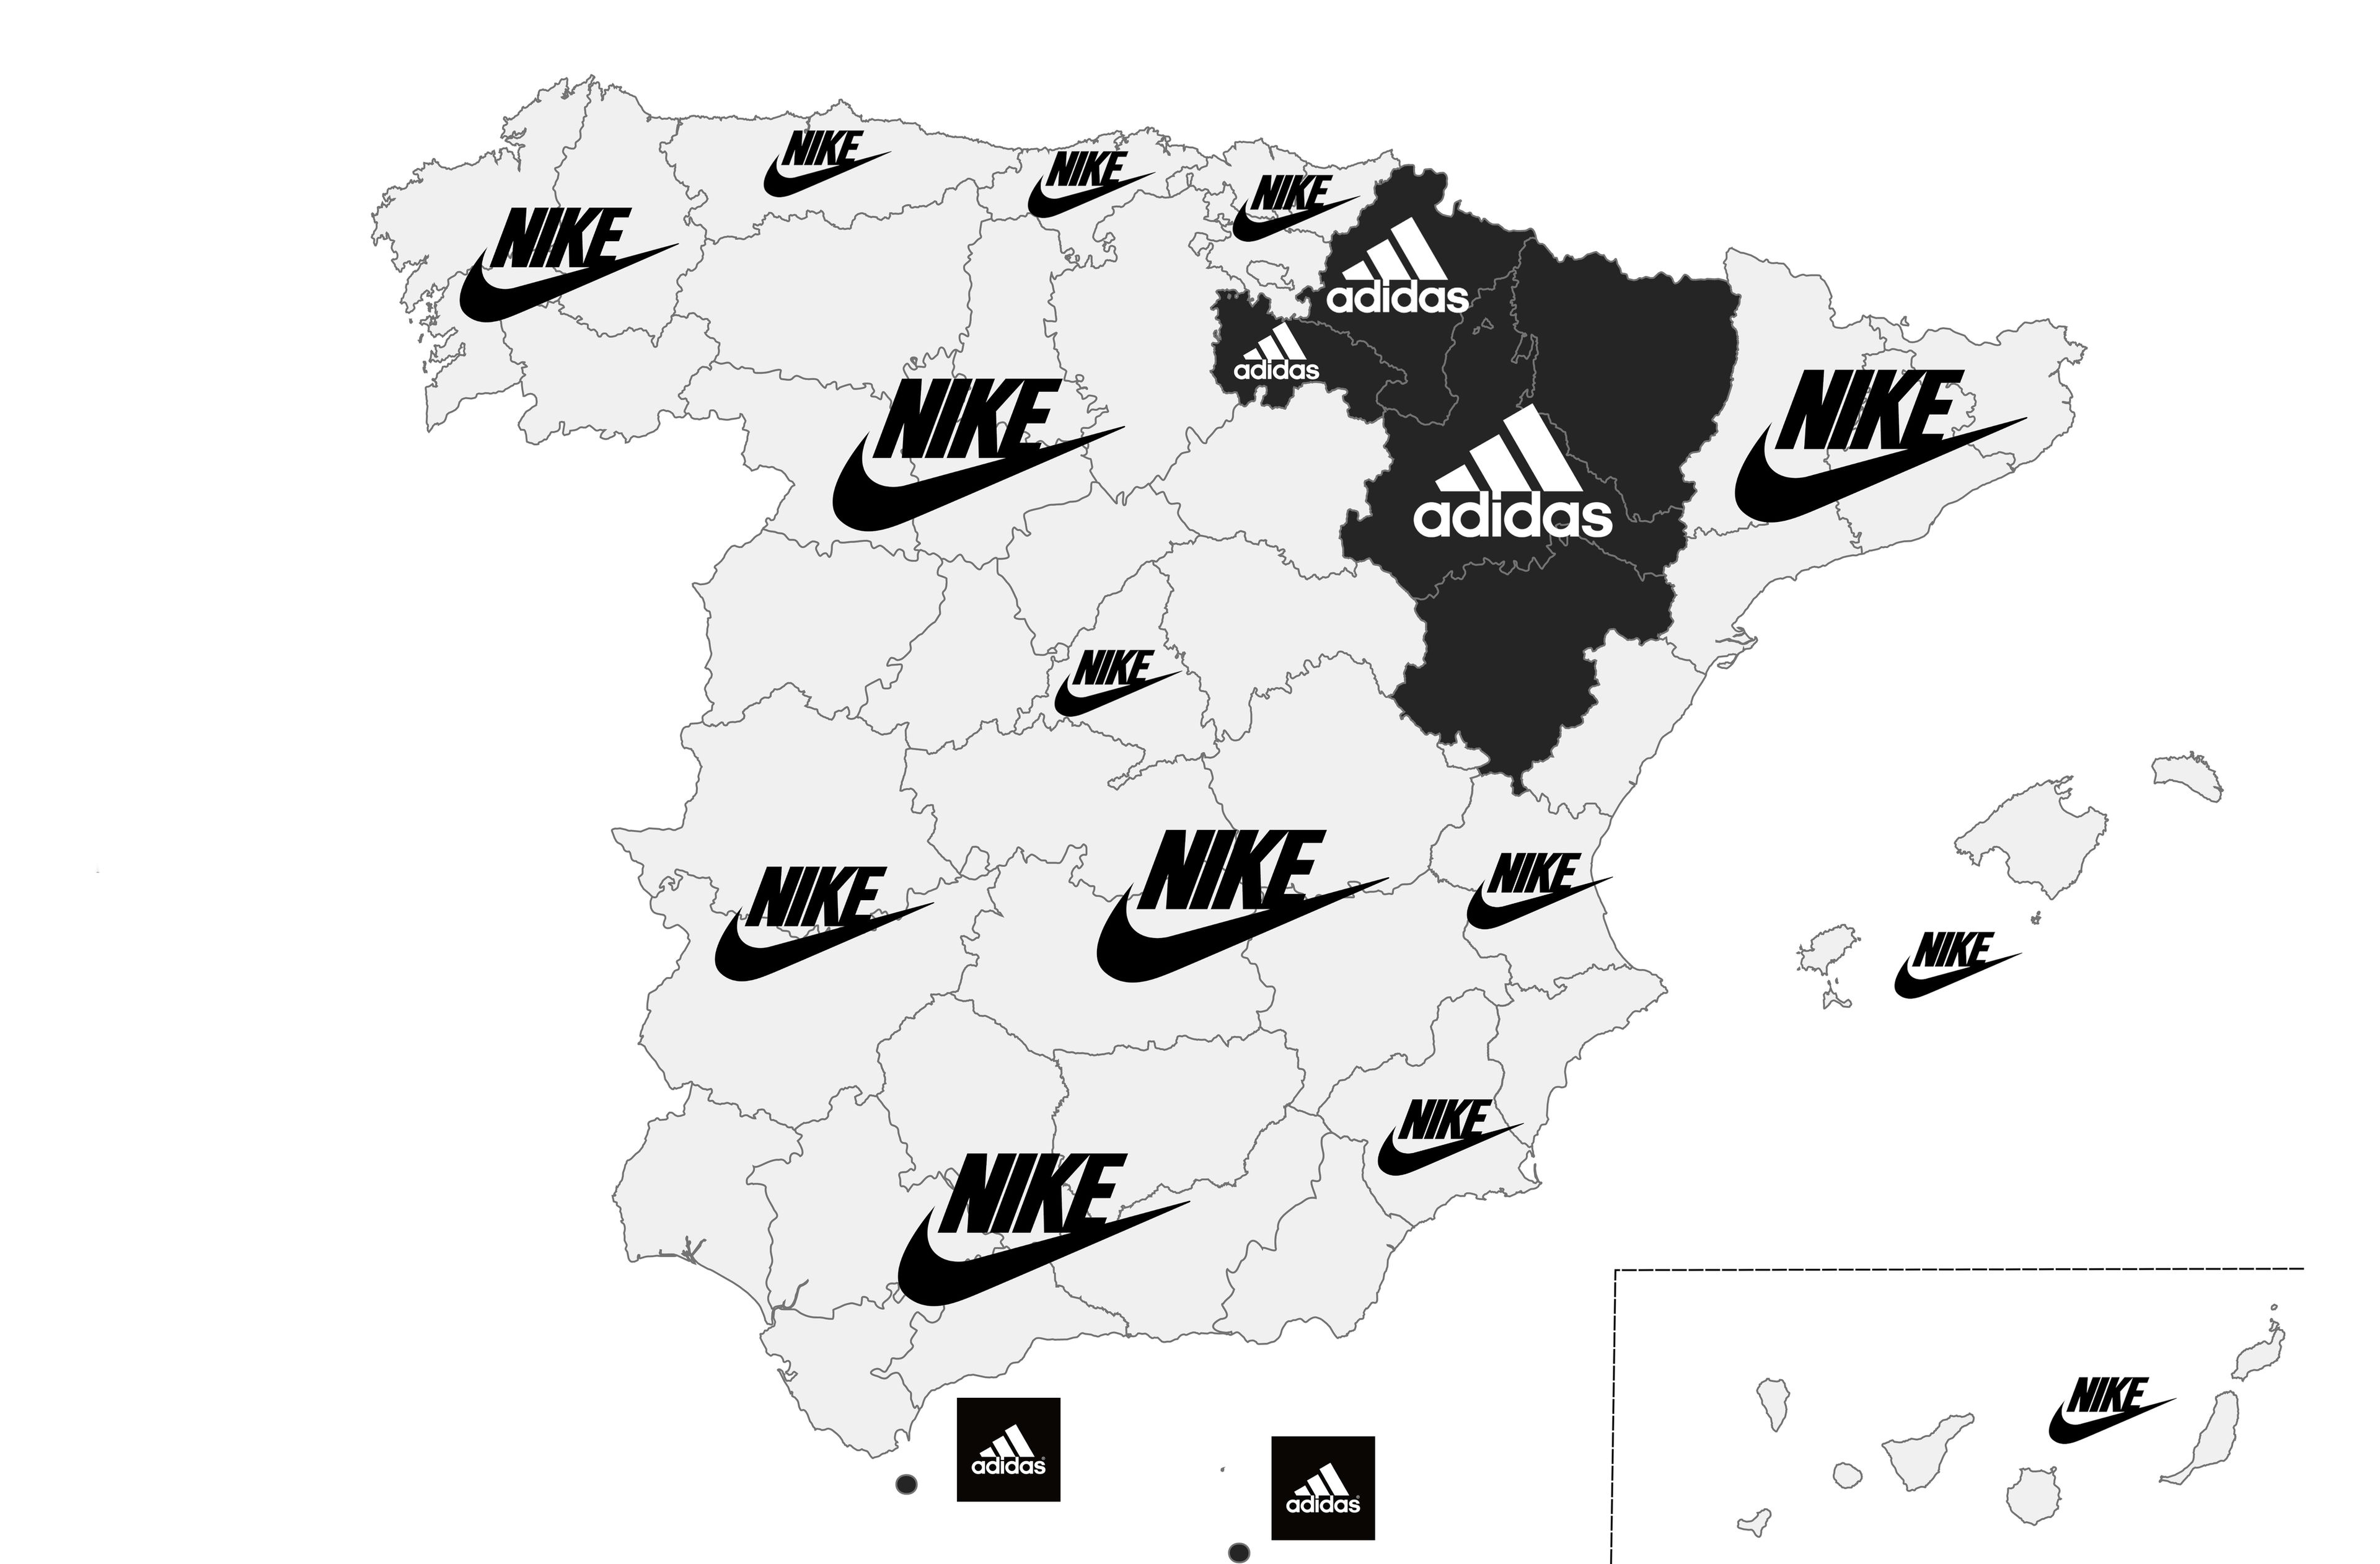 Mapa de las marcas de ropa deportivas favoritas, por comunidades autónomas en España.